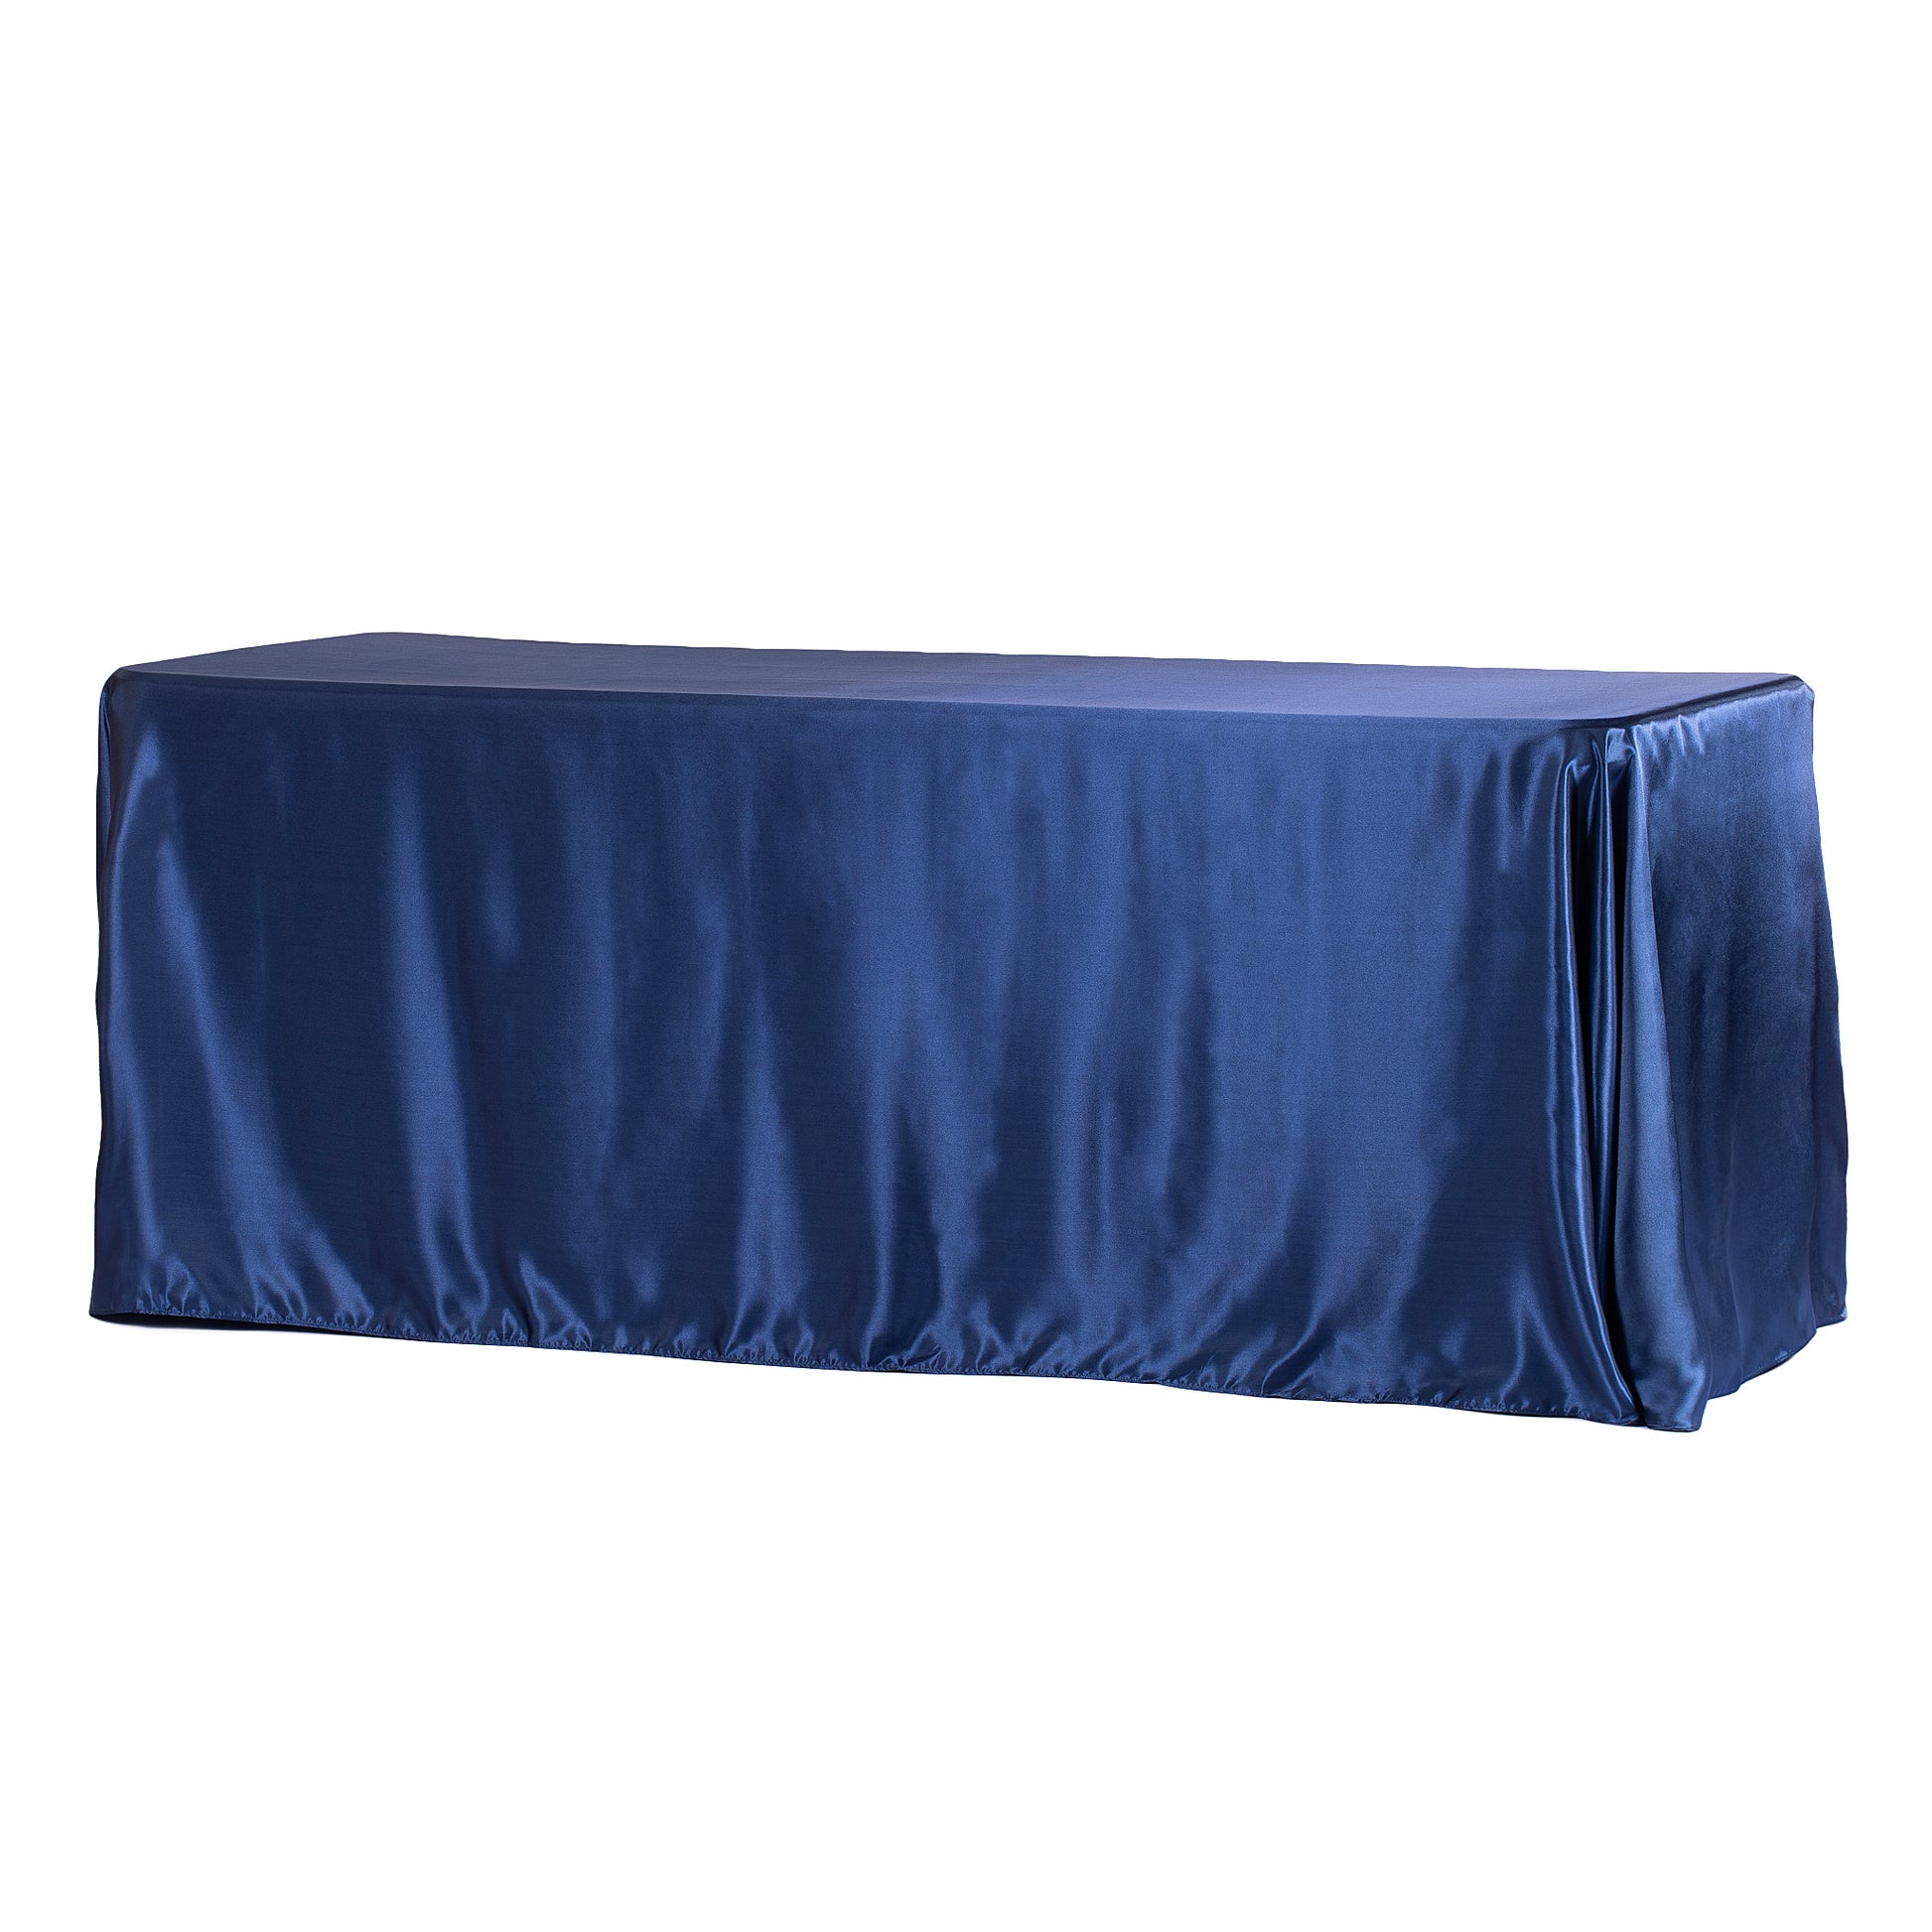 90"x156" Rectangular Satin Tablecloth - Navy Blue